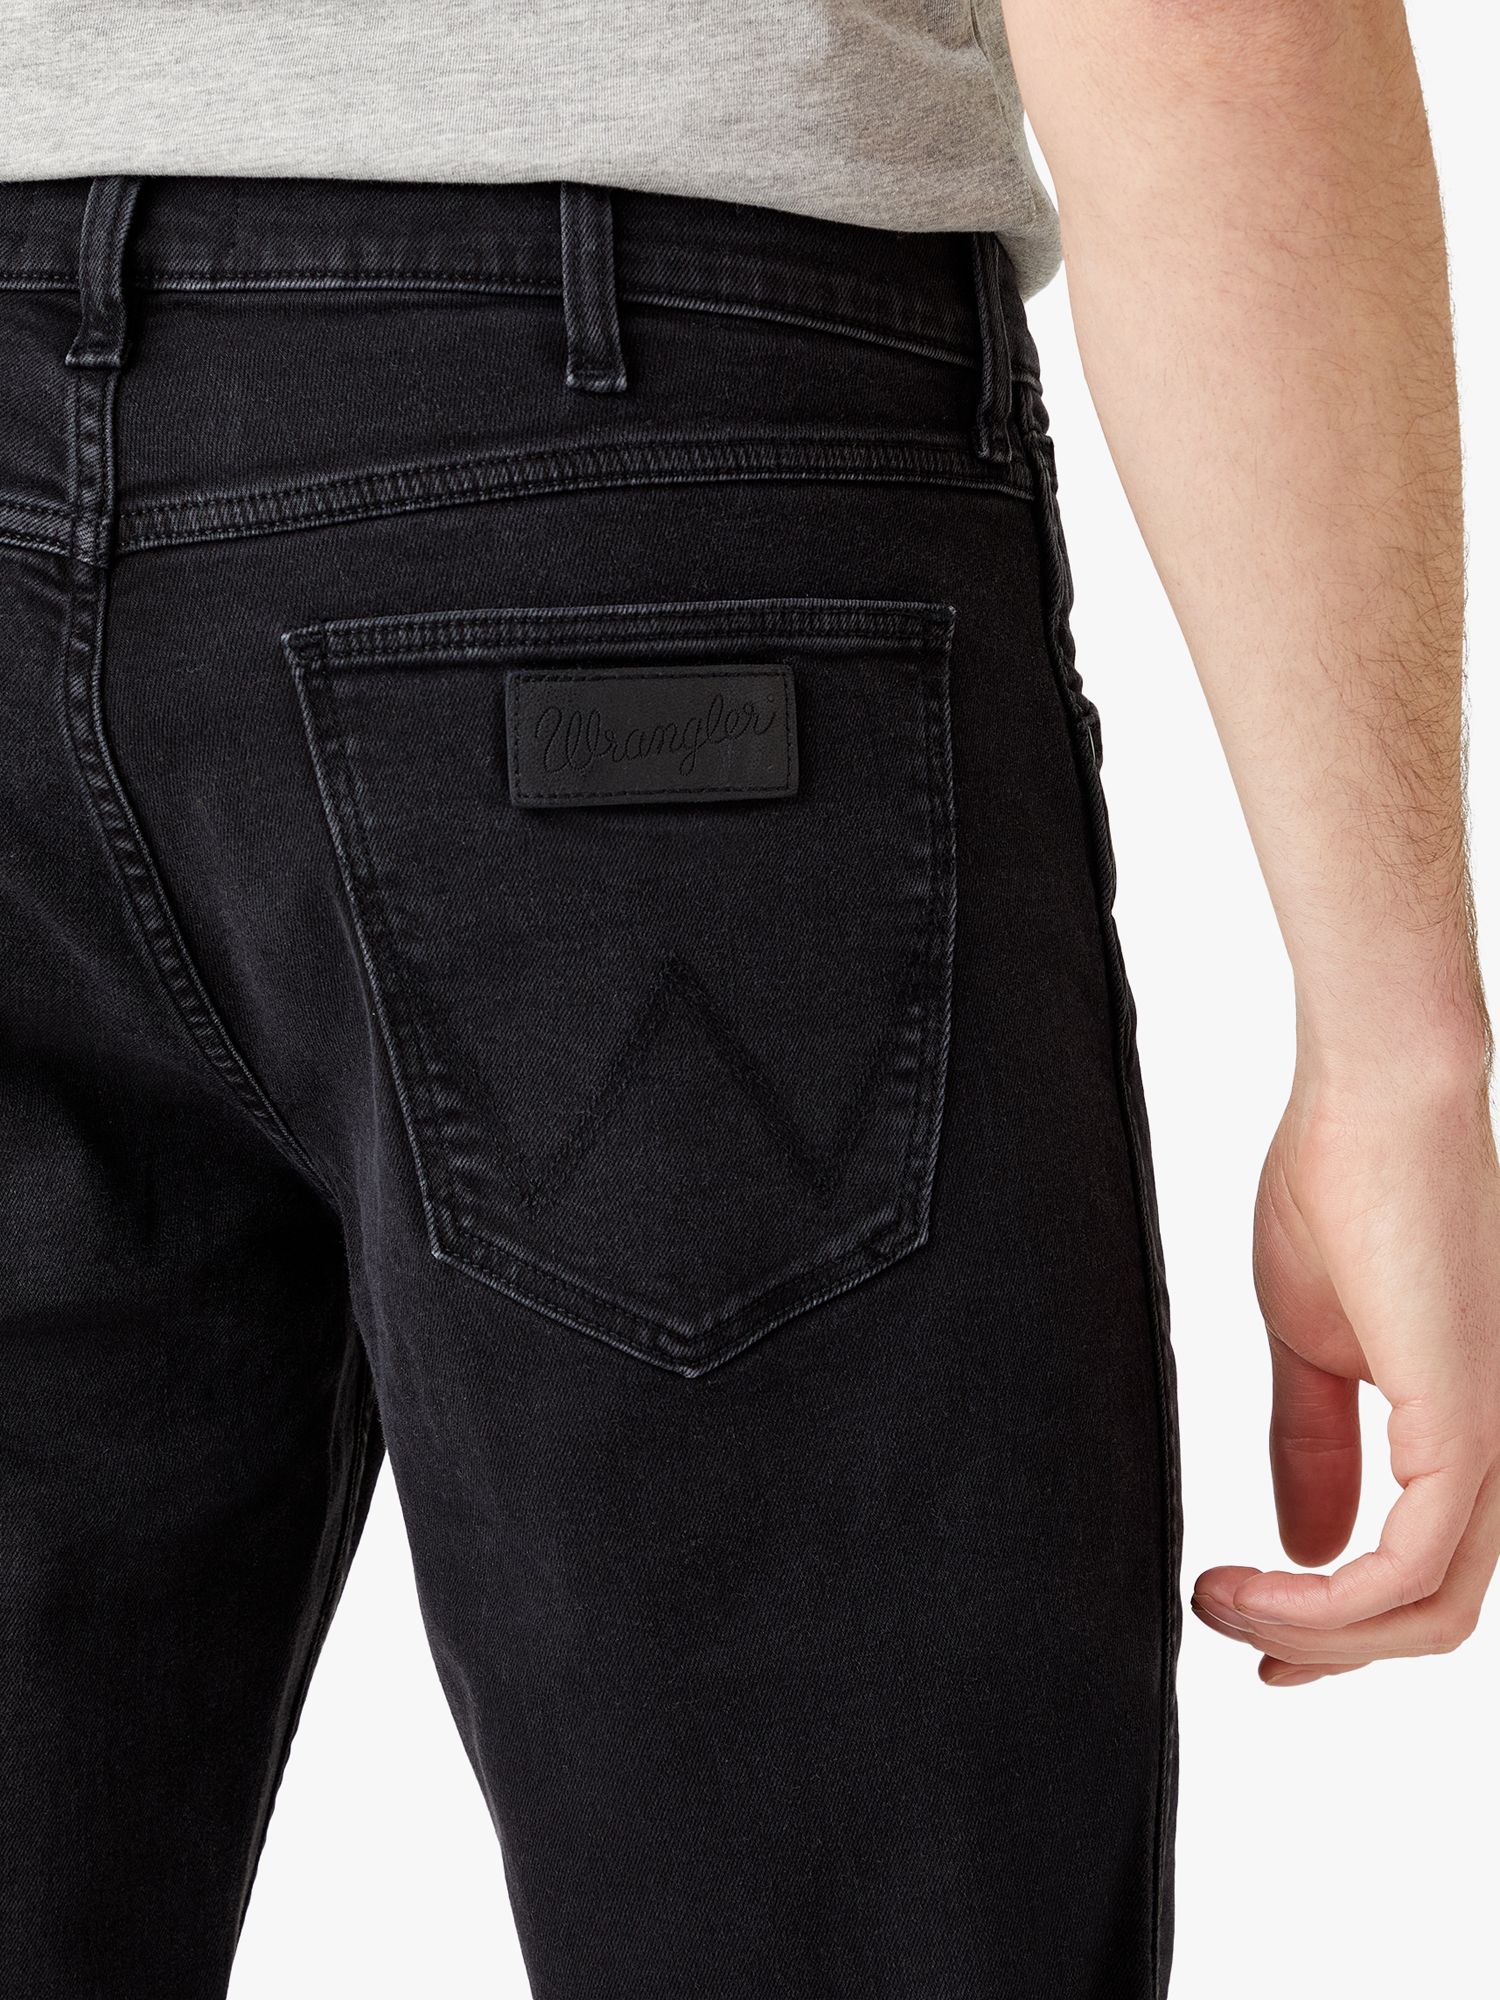 Wrangler Greensboro Slim Fit Denim Jeans, Black at John Lewis & Partners